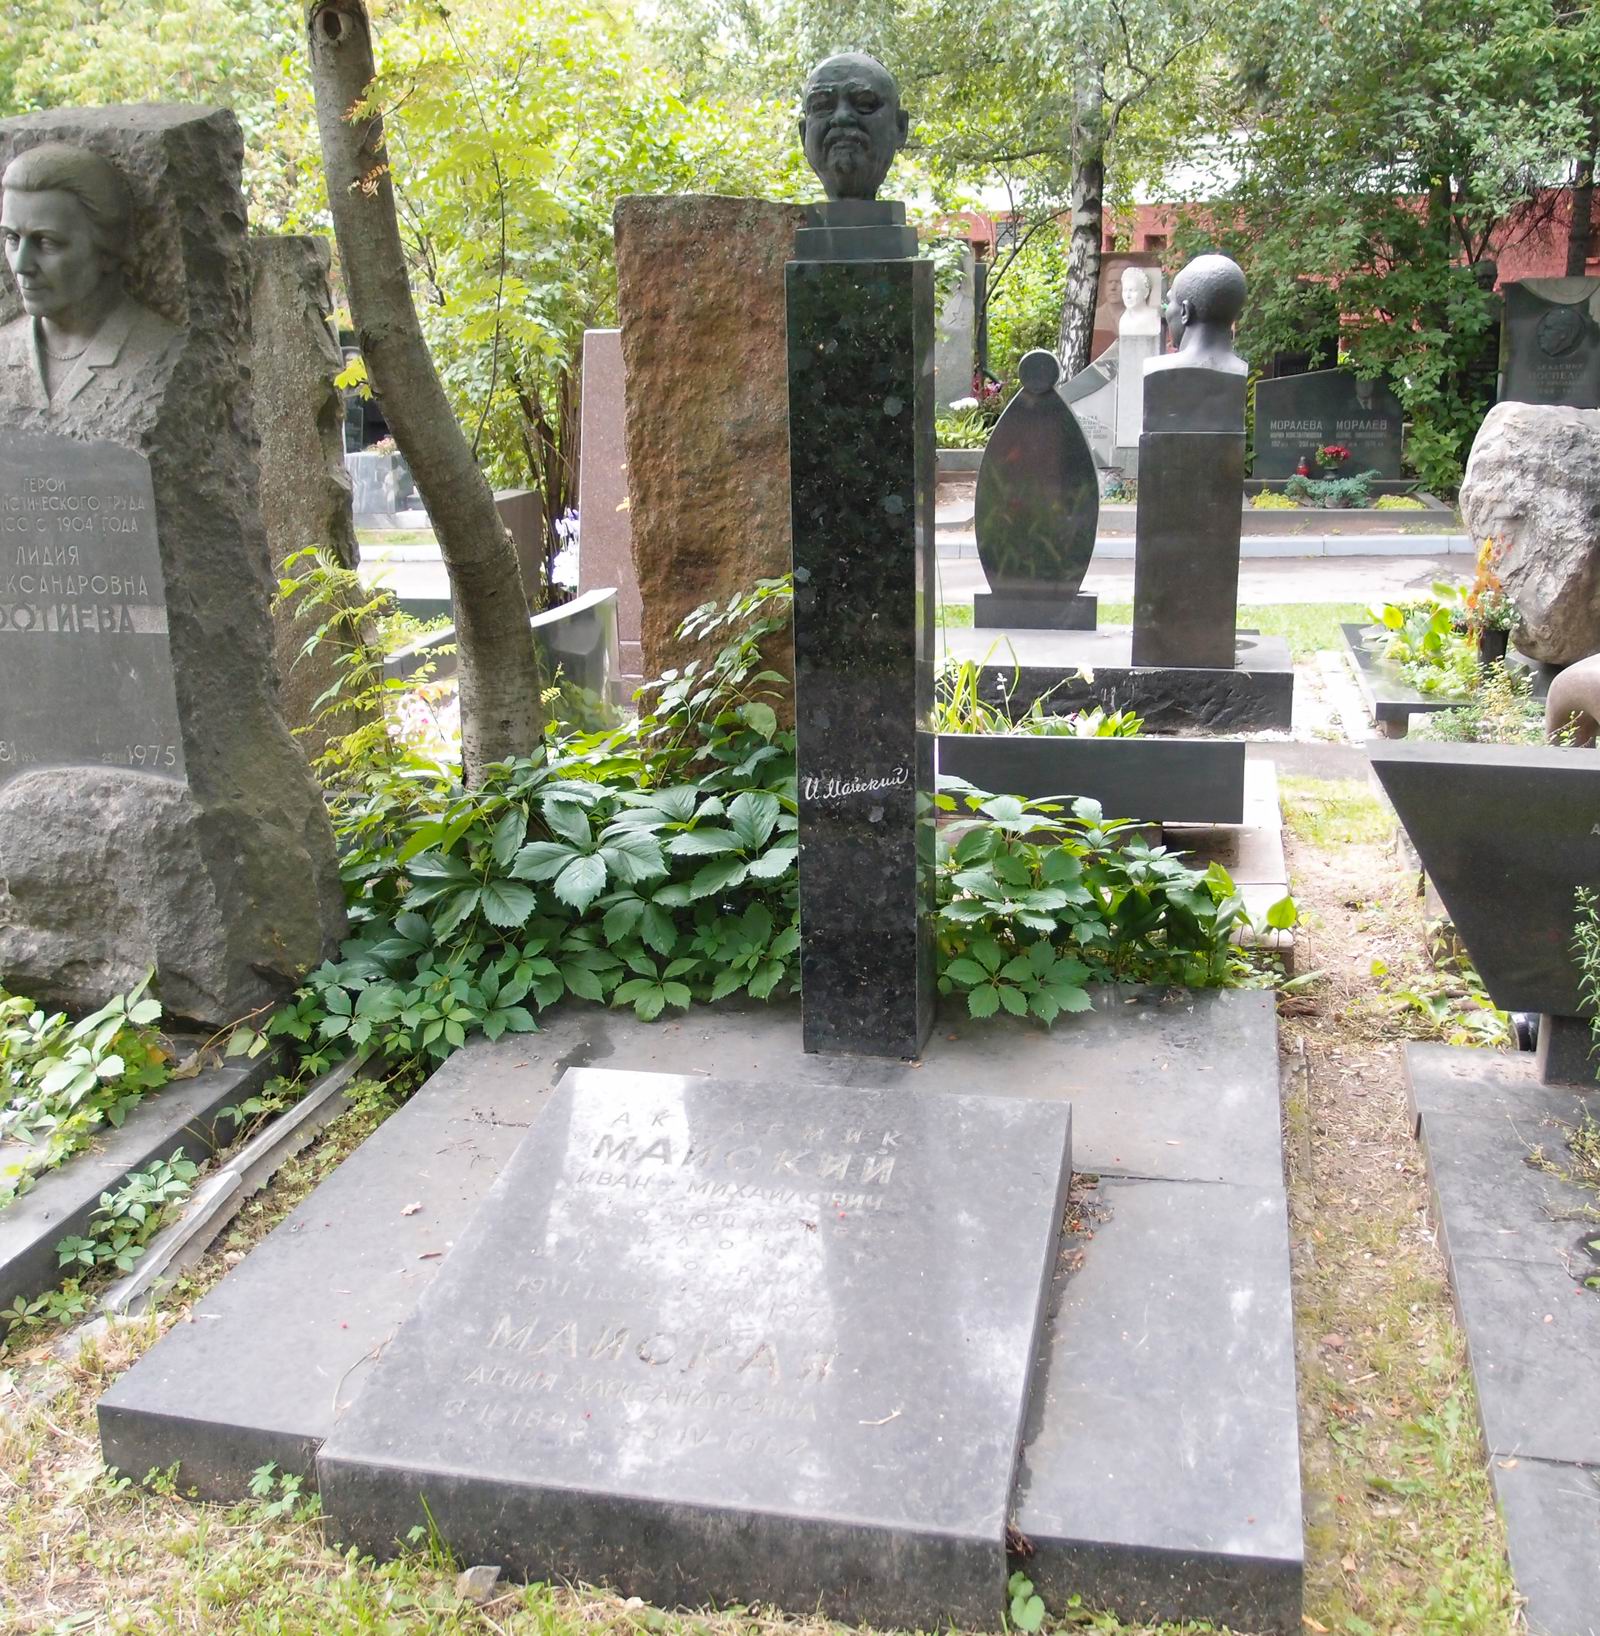 Памятник на могиле Майского И.М. (1884-1975), ск. Н.Никогосян, арх. Т.Никогосян, на Новодевичьем кладбище (9-1-7). Нажмите левую кнопку мыши чтобы увидеть фрагмент памятника.